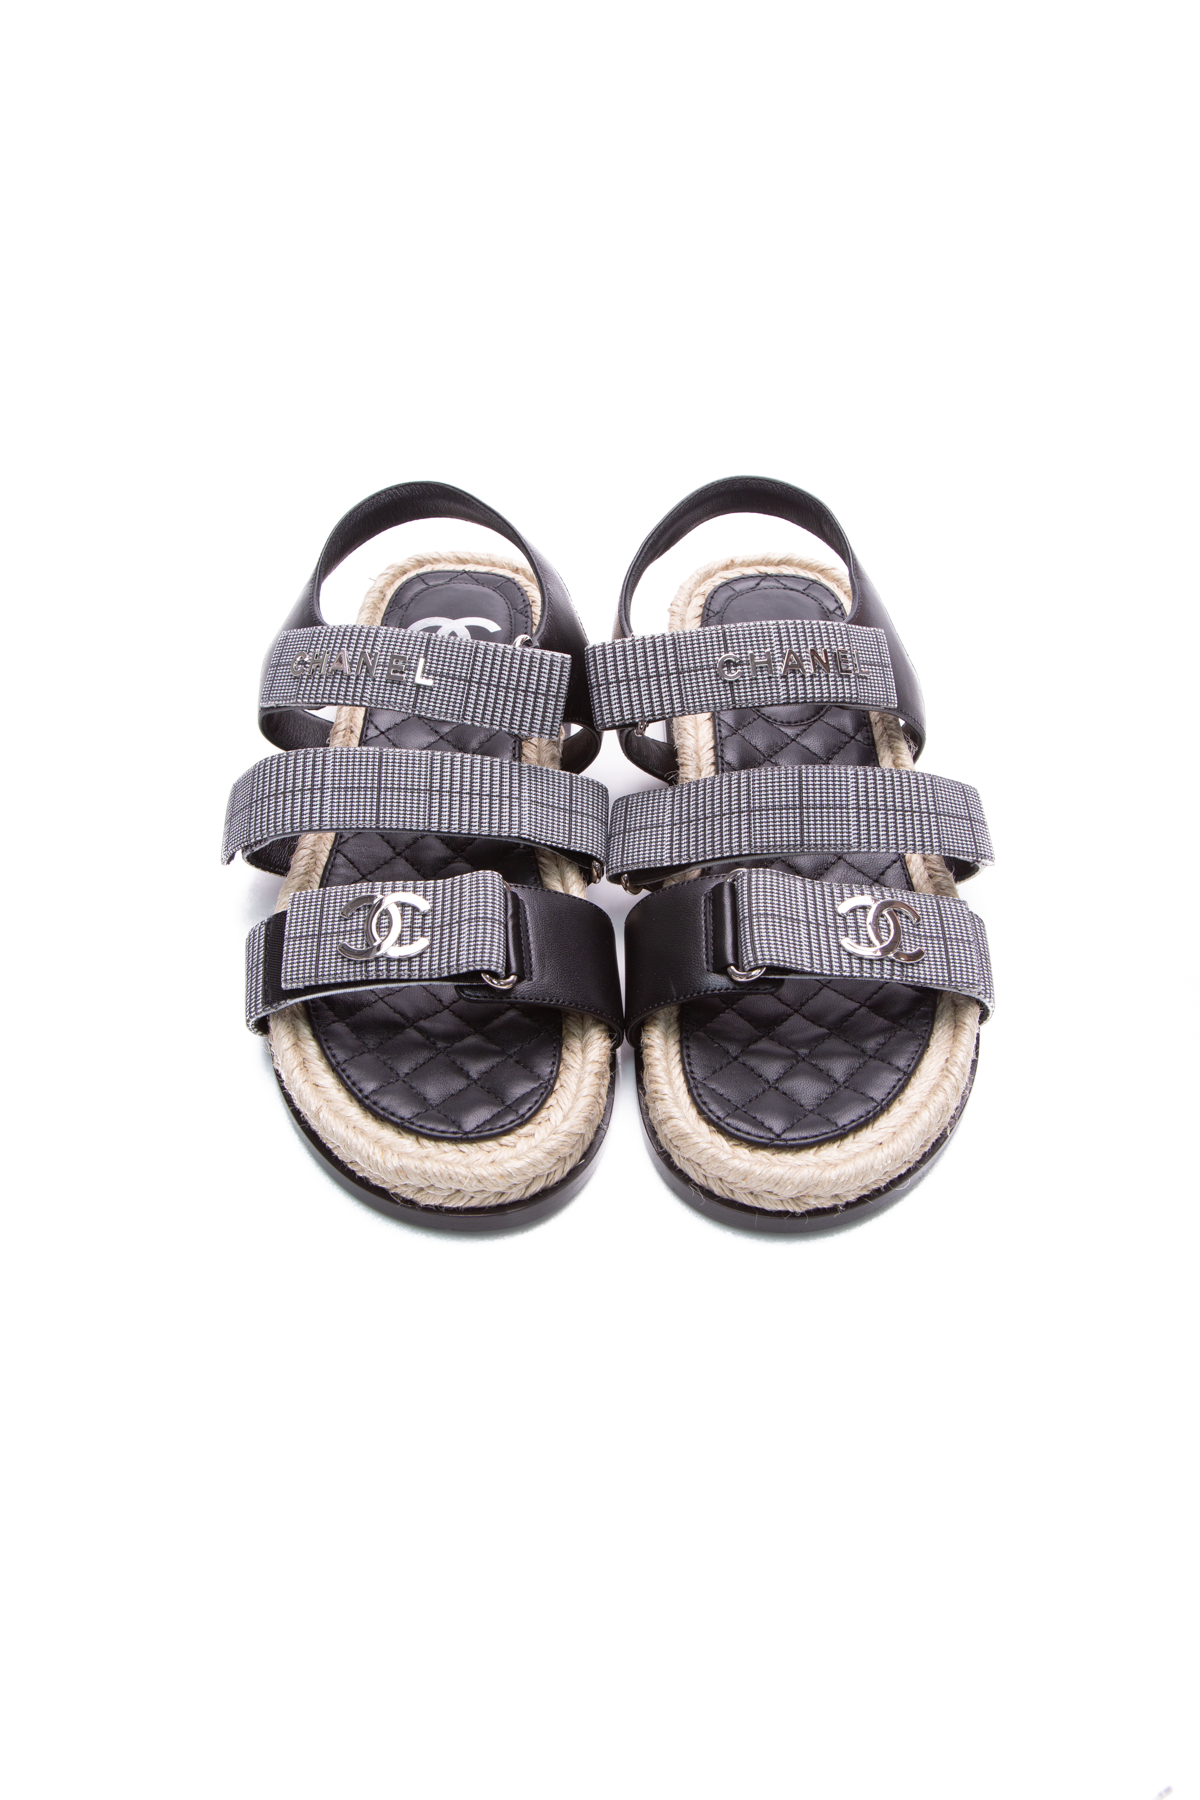 Chanel Plaid Sandals - Size 38